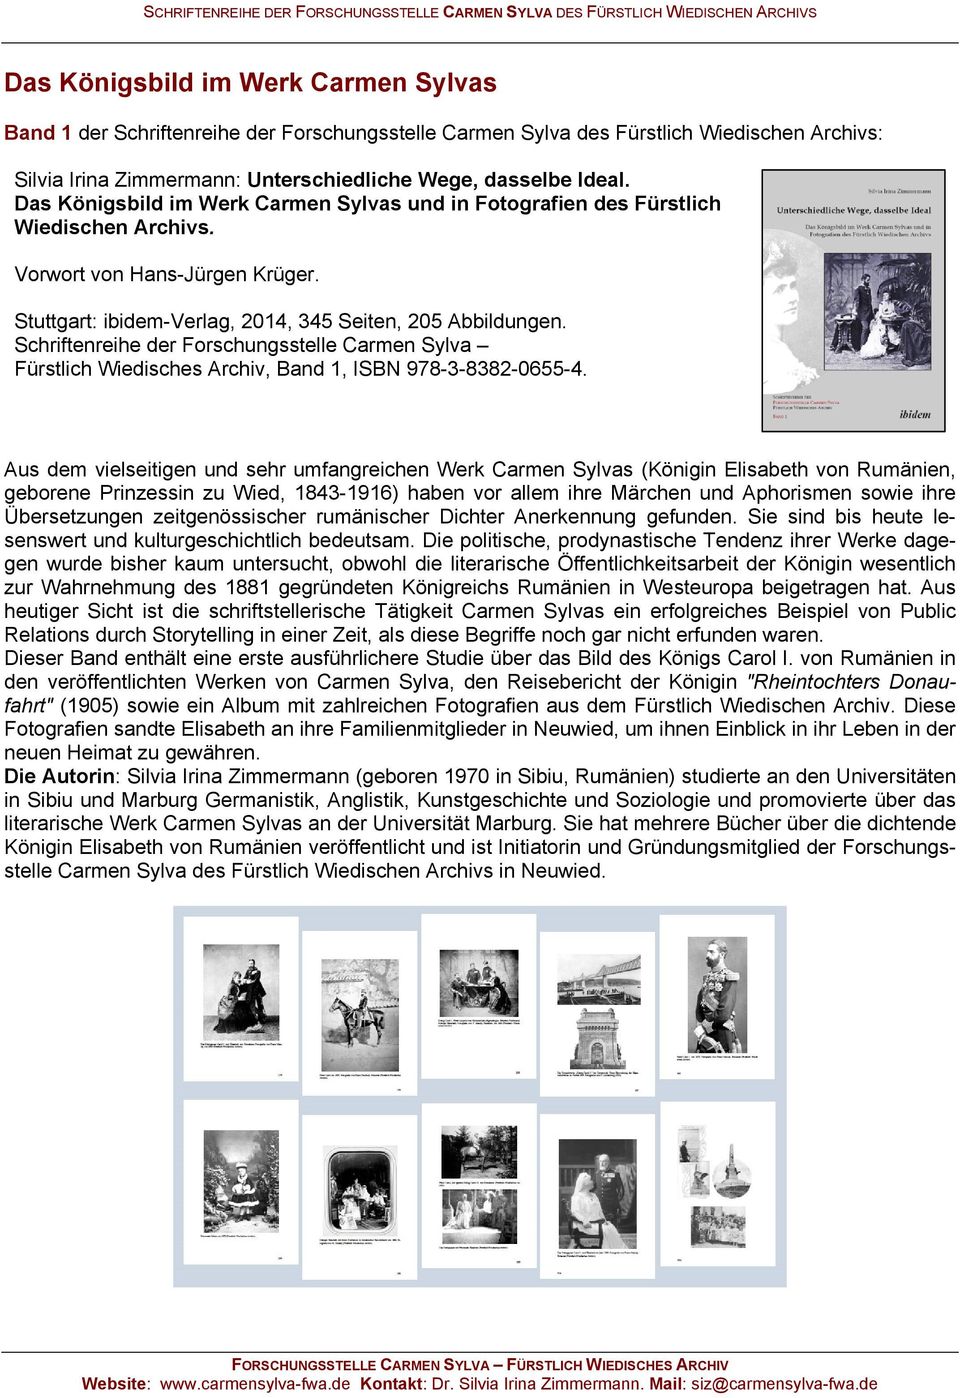 Schriftenreihe der Forschungsstelle Carmen Sylva Fürstlich Wiedisches Archiv, Band 1, ISBN 978-3-8382-0655-4.